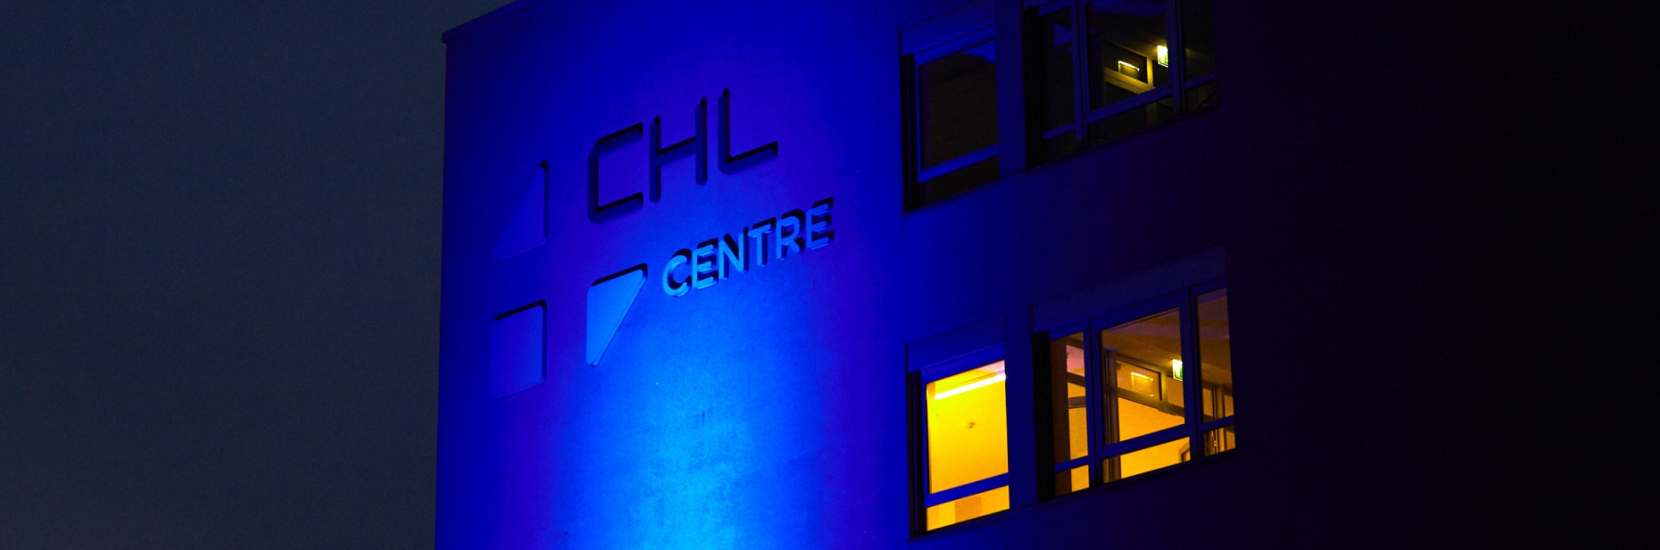 Le CHL participe à l’action Light It Up Blue 2019